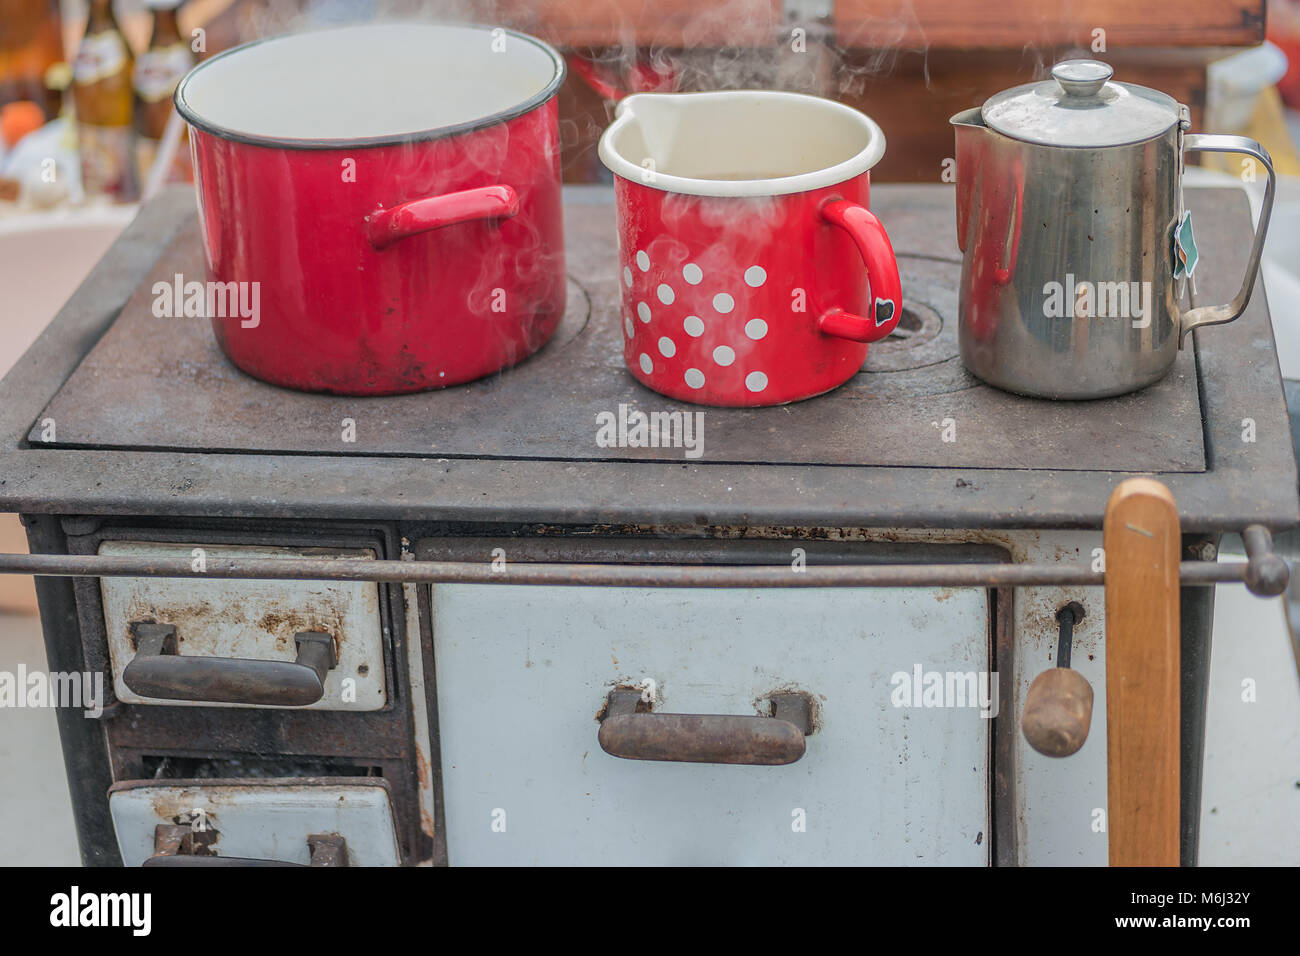 Kochen Gerichte und Heizung Wasser auf retro Holz betriebene Herd, flachen Fokus Stockfoto